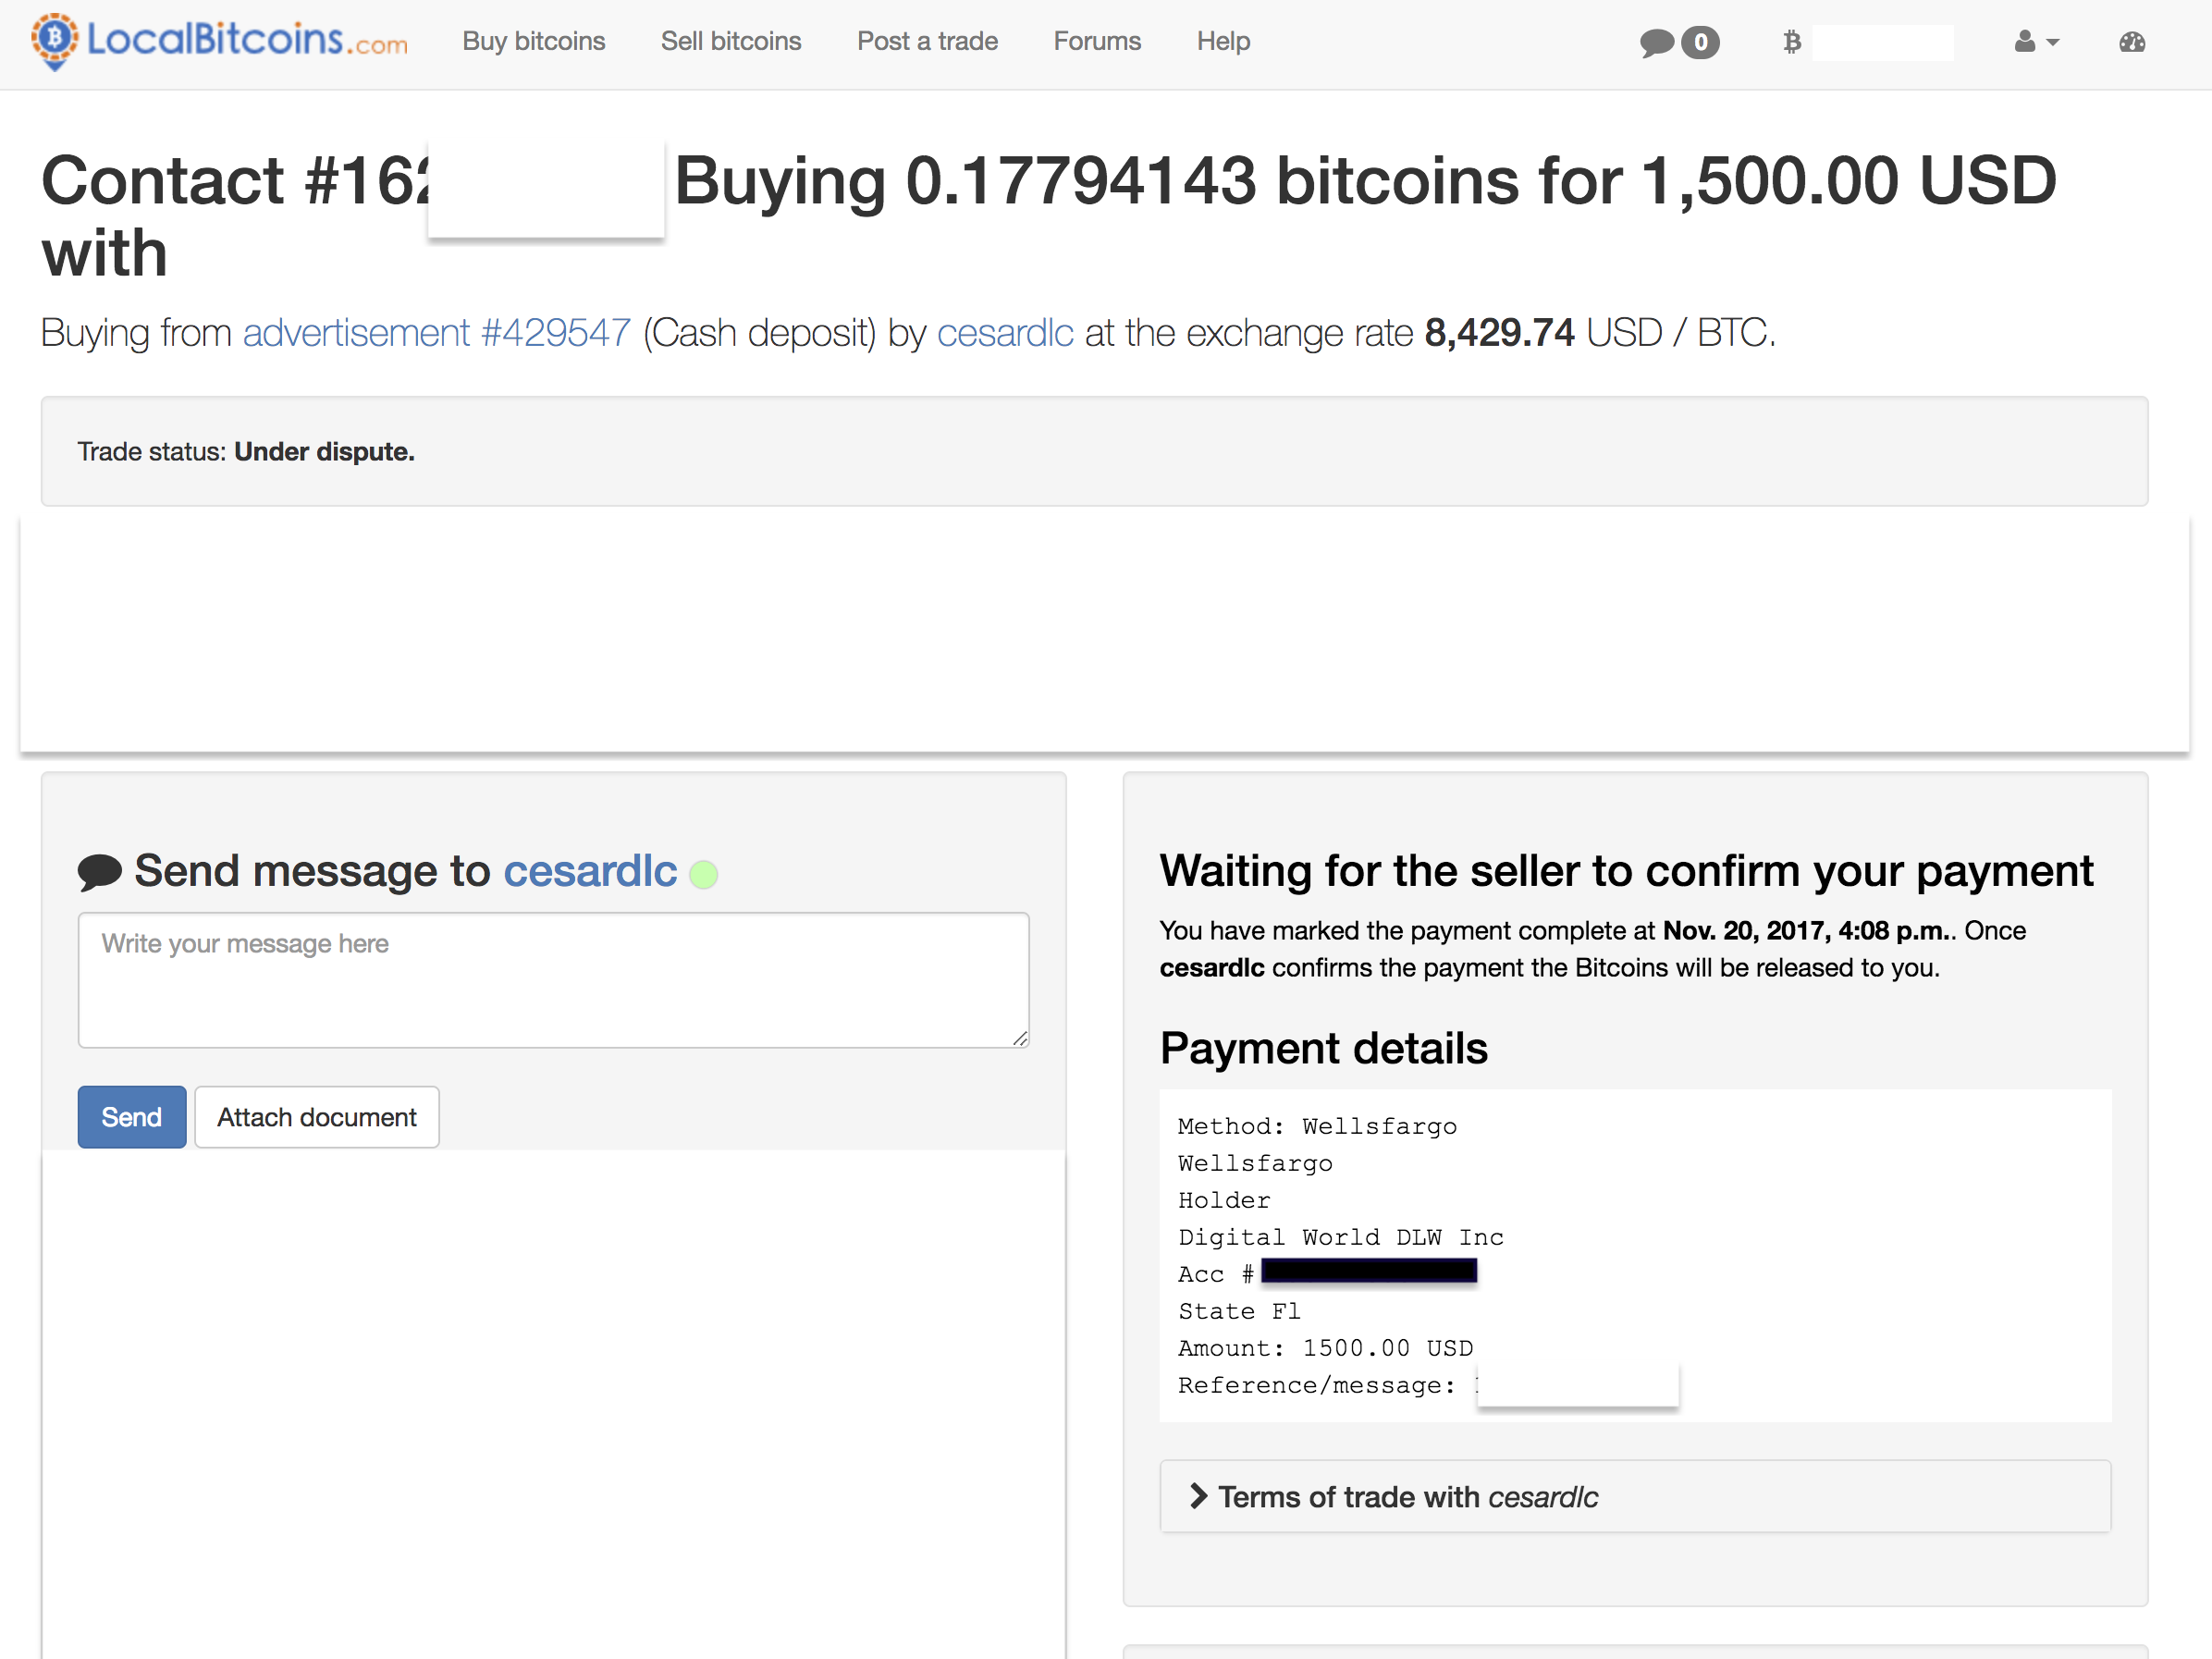 Fraudulent bitcoin sales. 